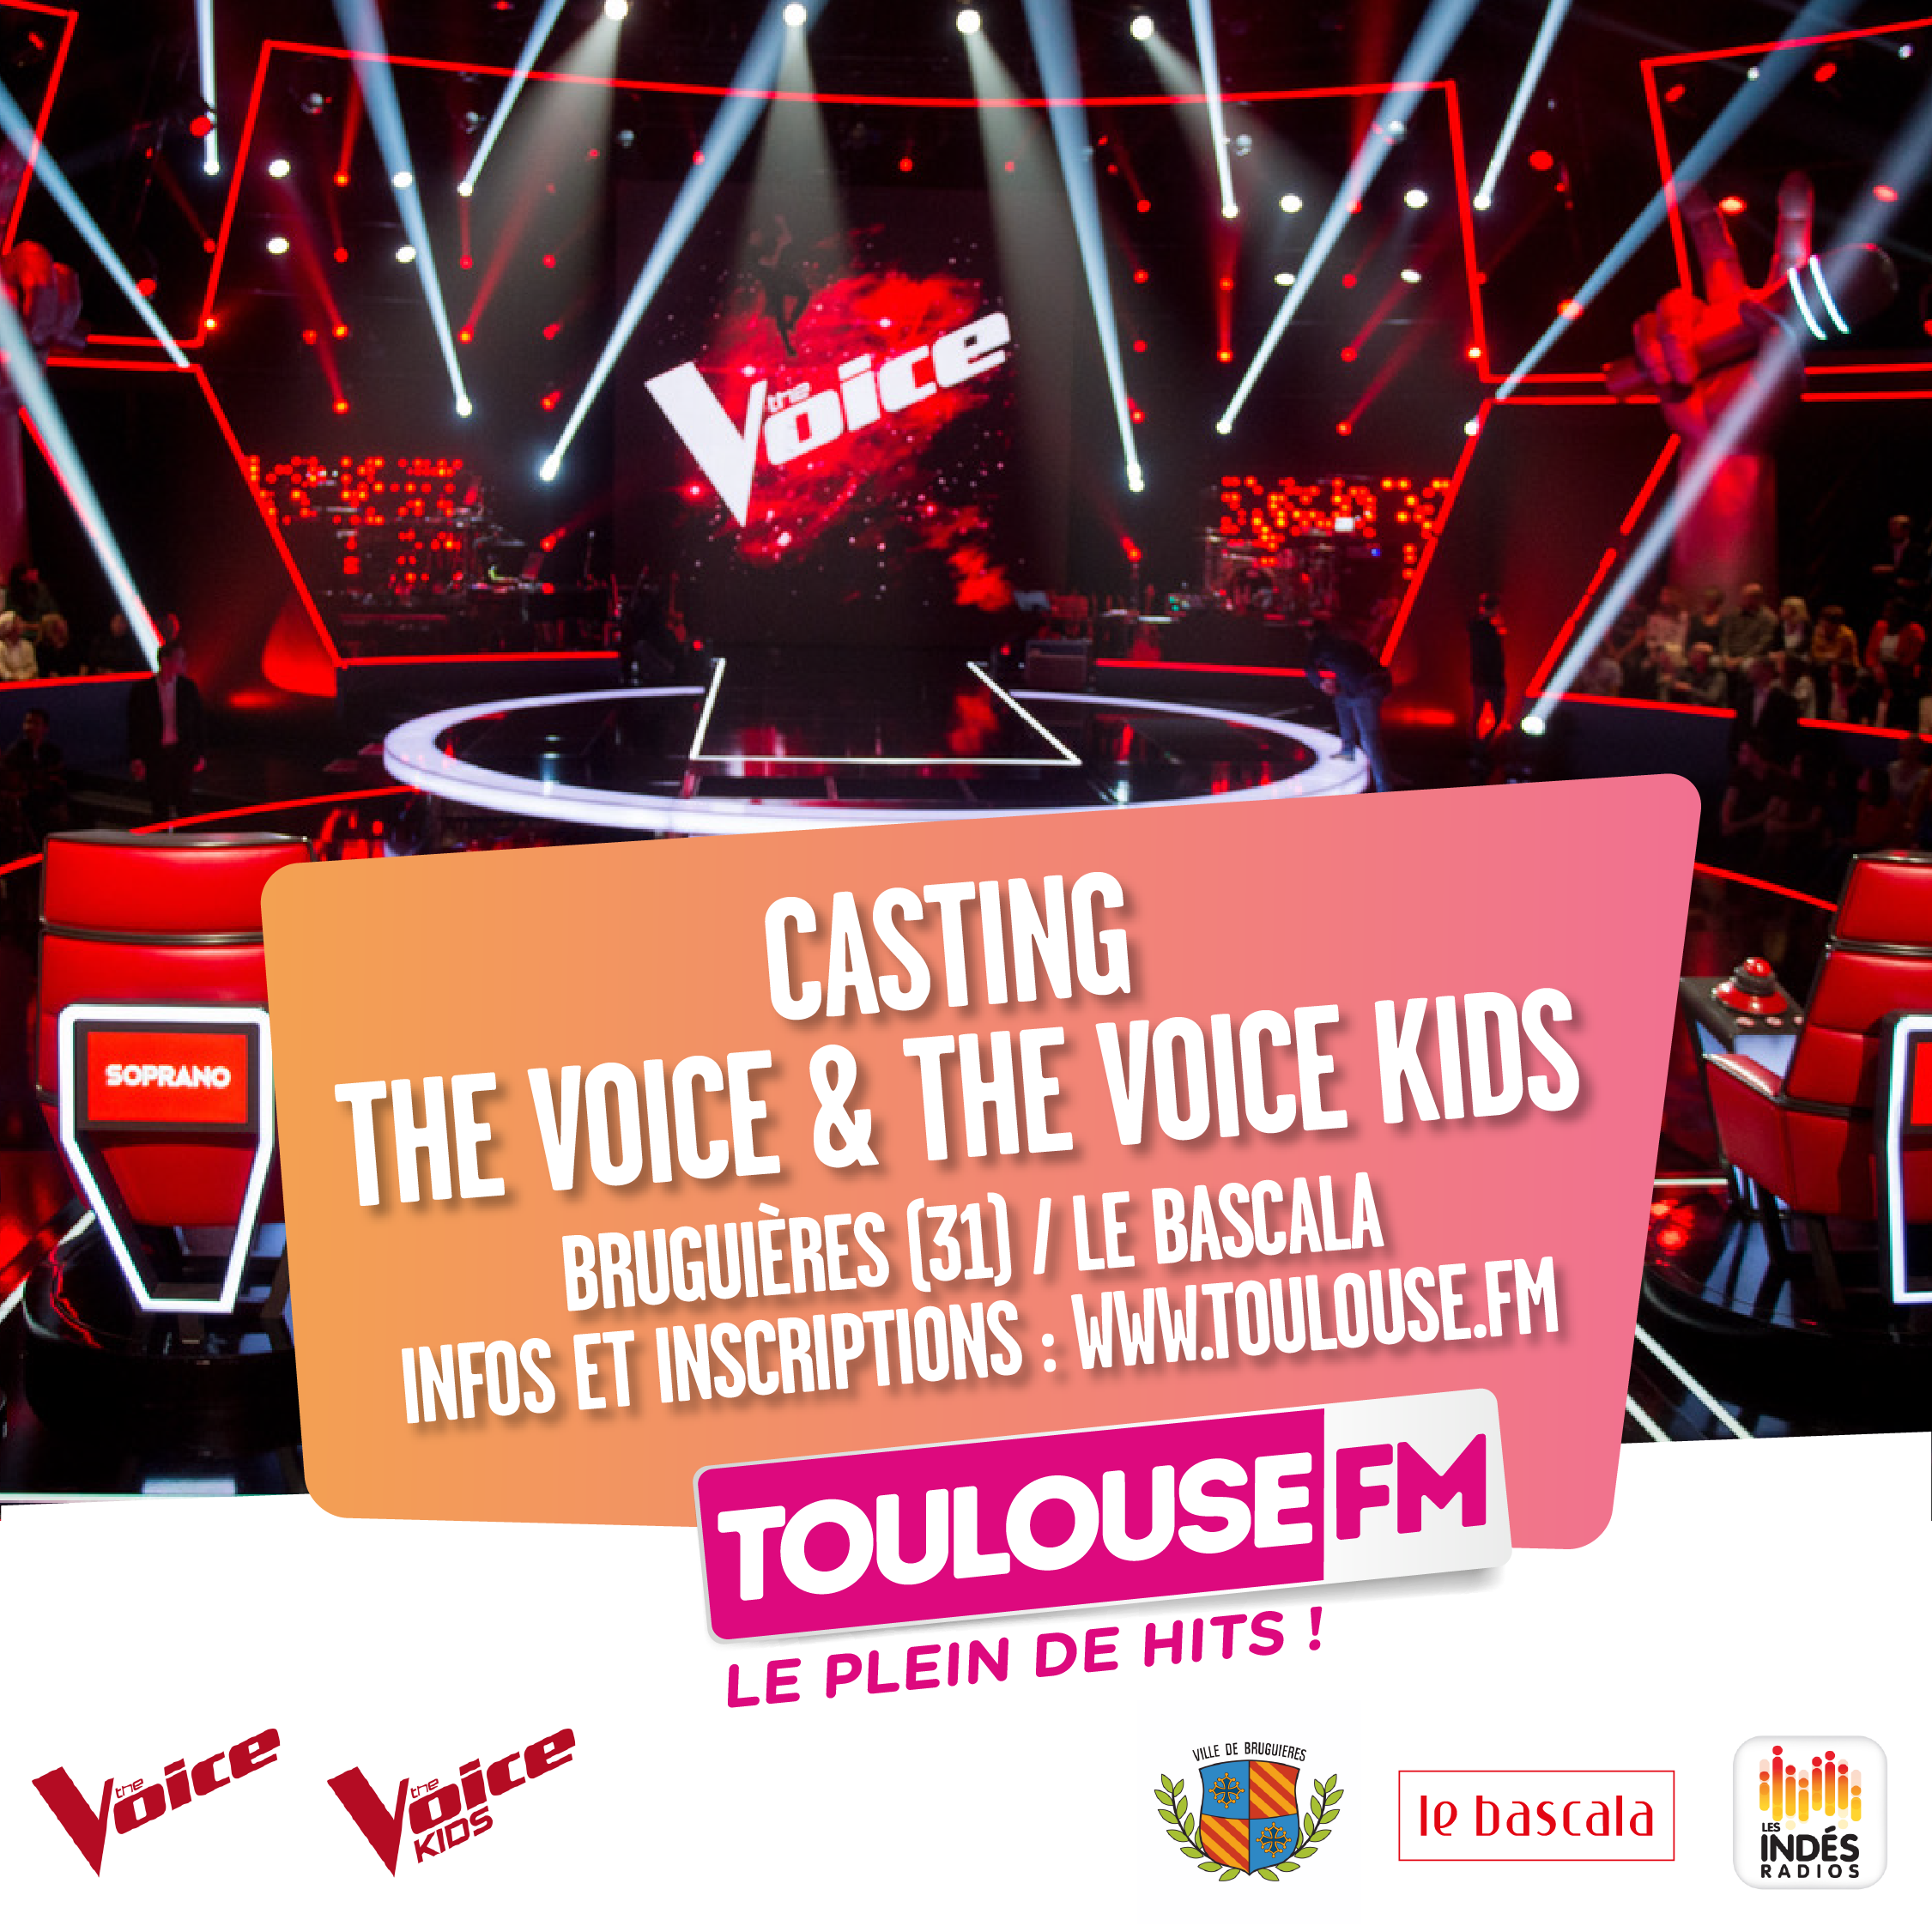 Un casting The Voice avec Toulouse FM